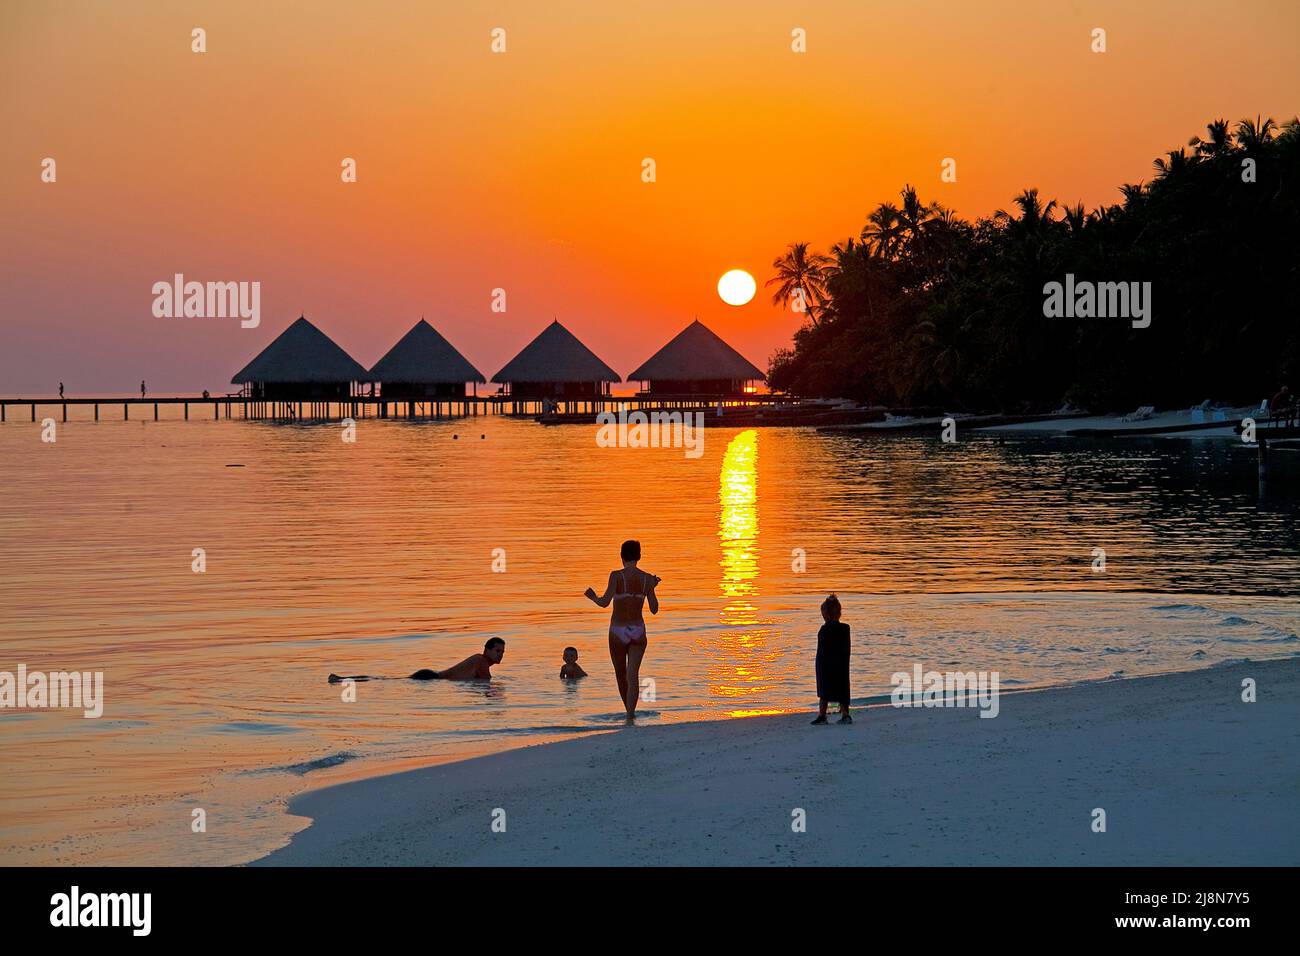 Touristen am Strand geniessen den romantischen Sonnenuntergang hinter den Wasserbungalows, Rannalhi, Sued Male Atoll, Malediven, Indischer Ozean, Asie Foto de stock